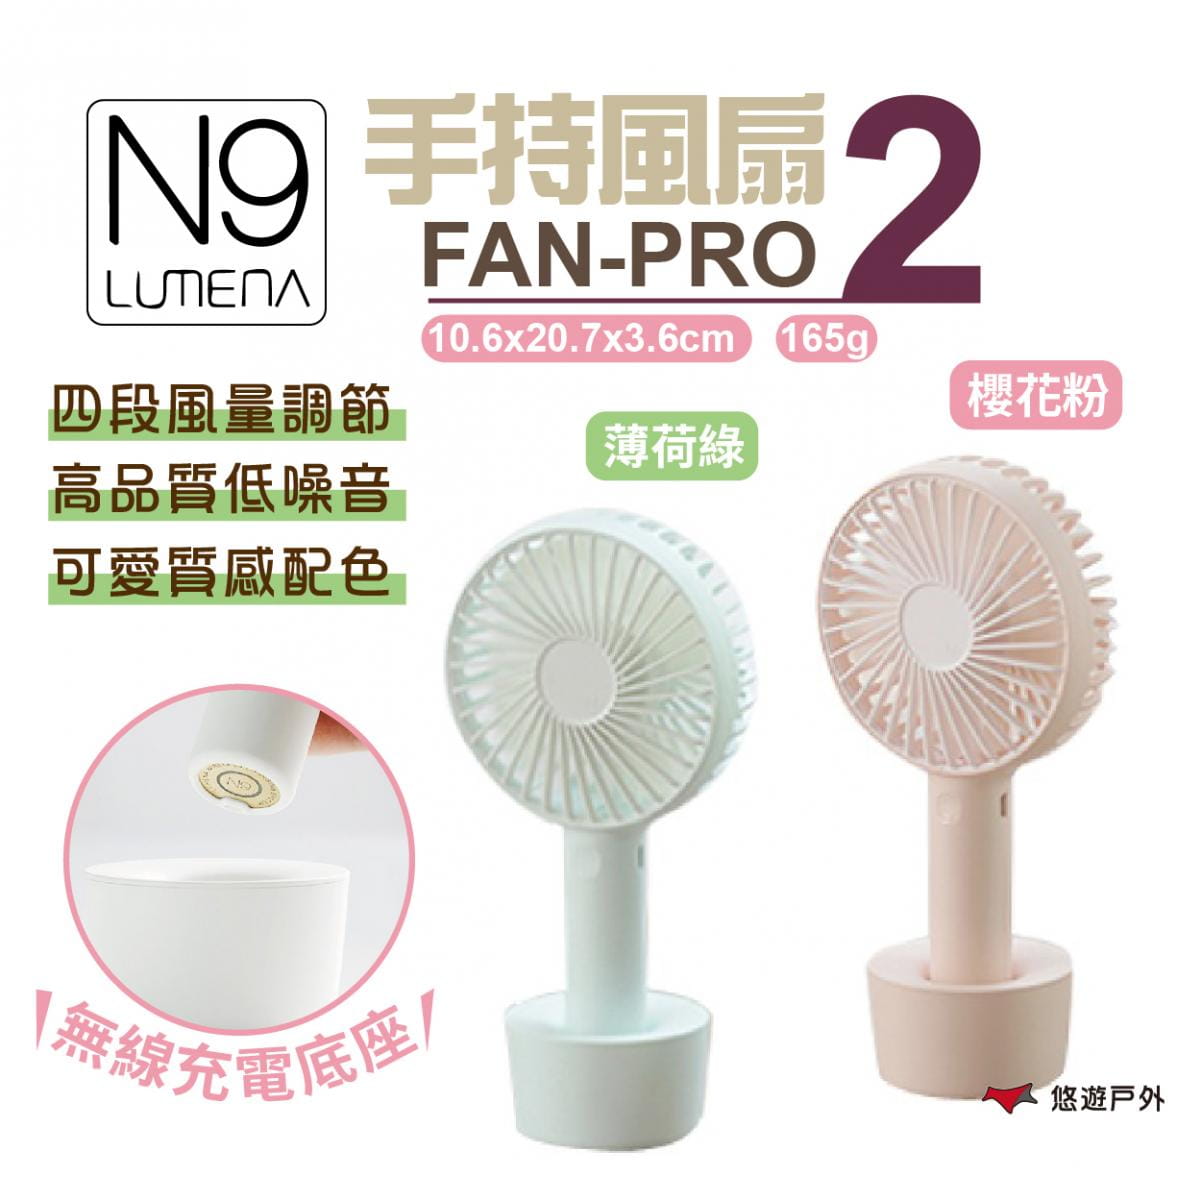 【N9 LUMENA】N9 FAN MINI 手持風扇PRO2 (悠遊戶外) 0